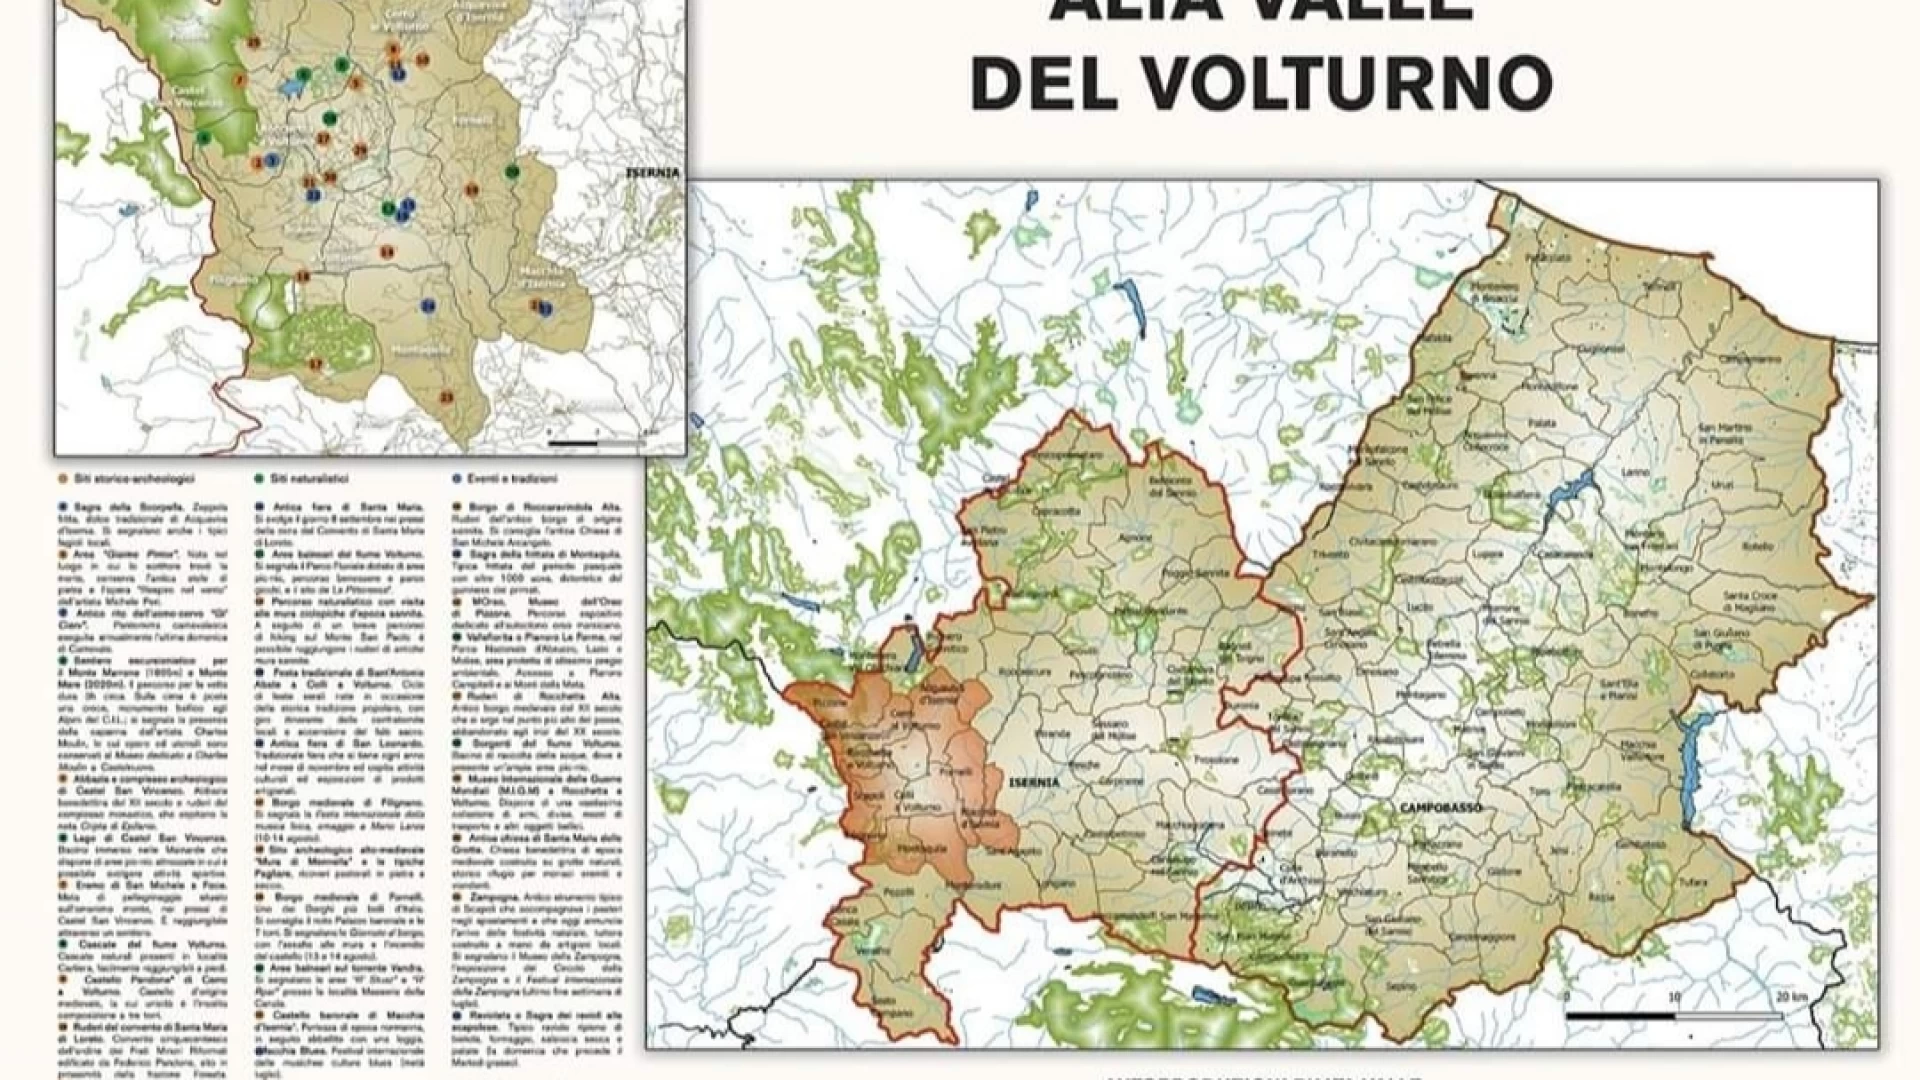 Mappa dell'Alta Valle del Volturno: la geniale idea di un gruppo di giovani collesi